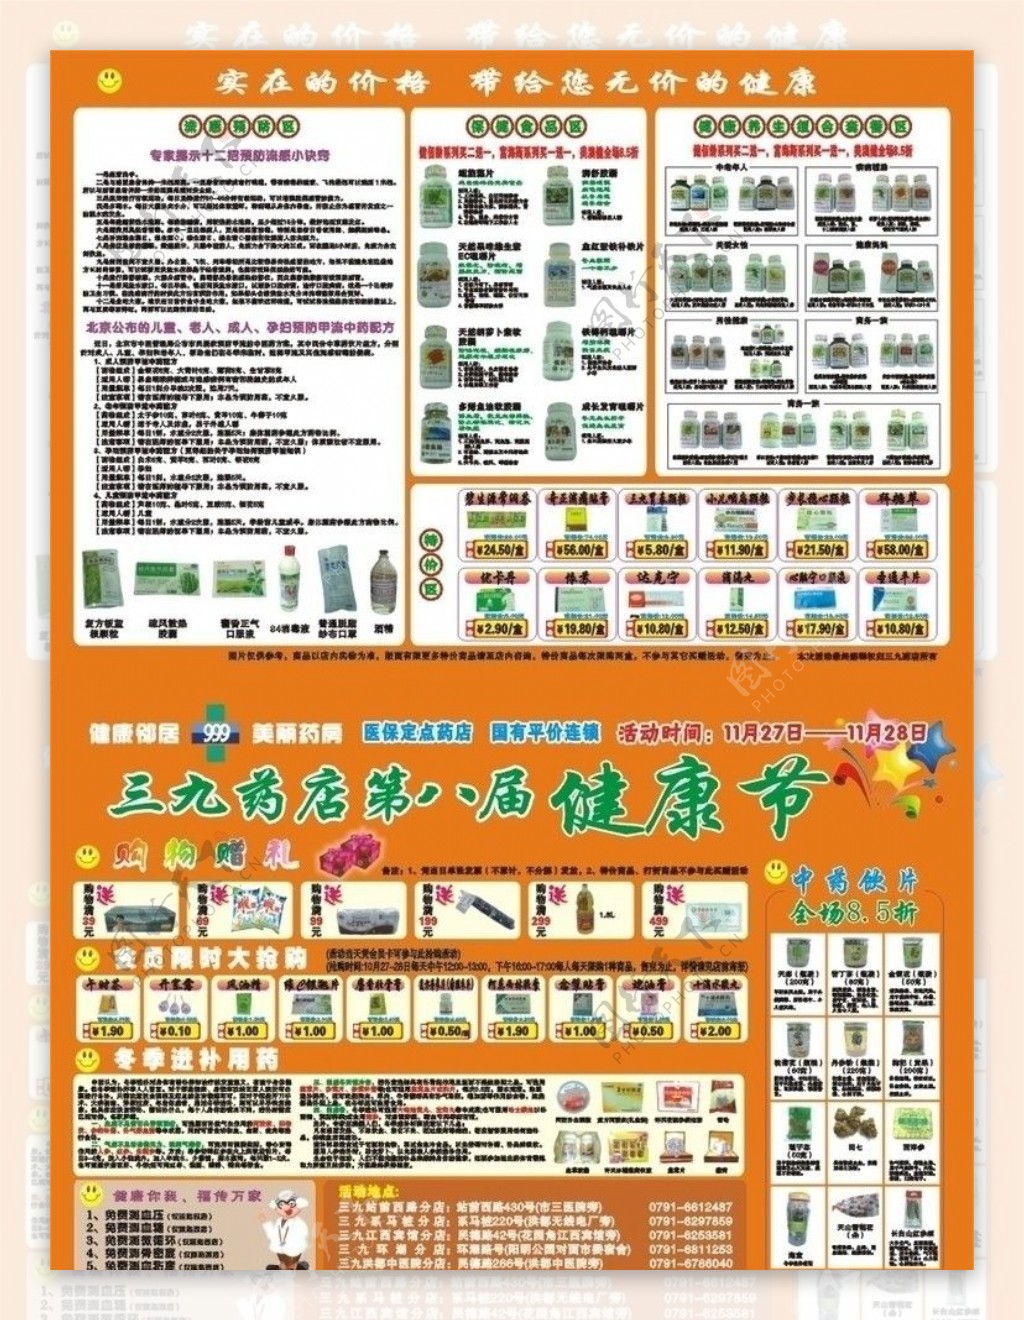 三九药店宣传彩页图片